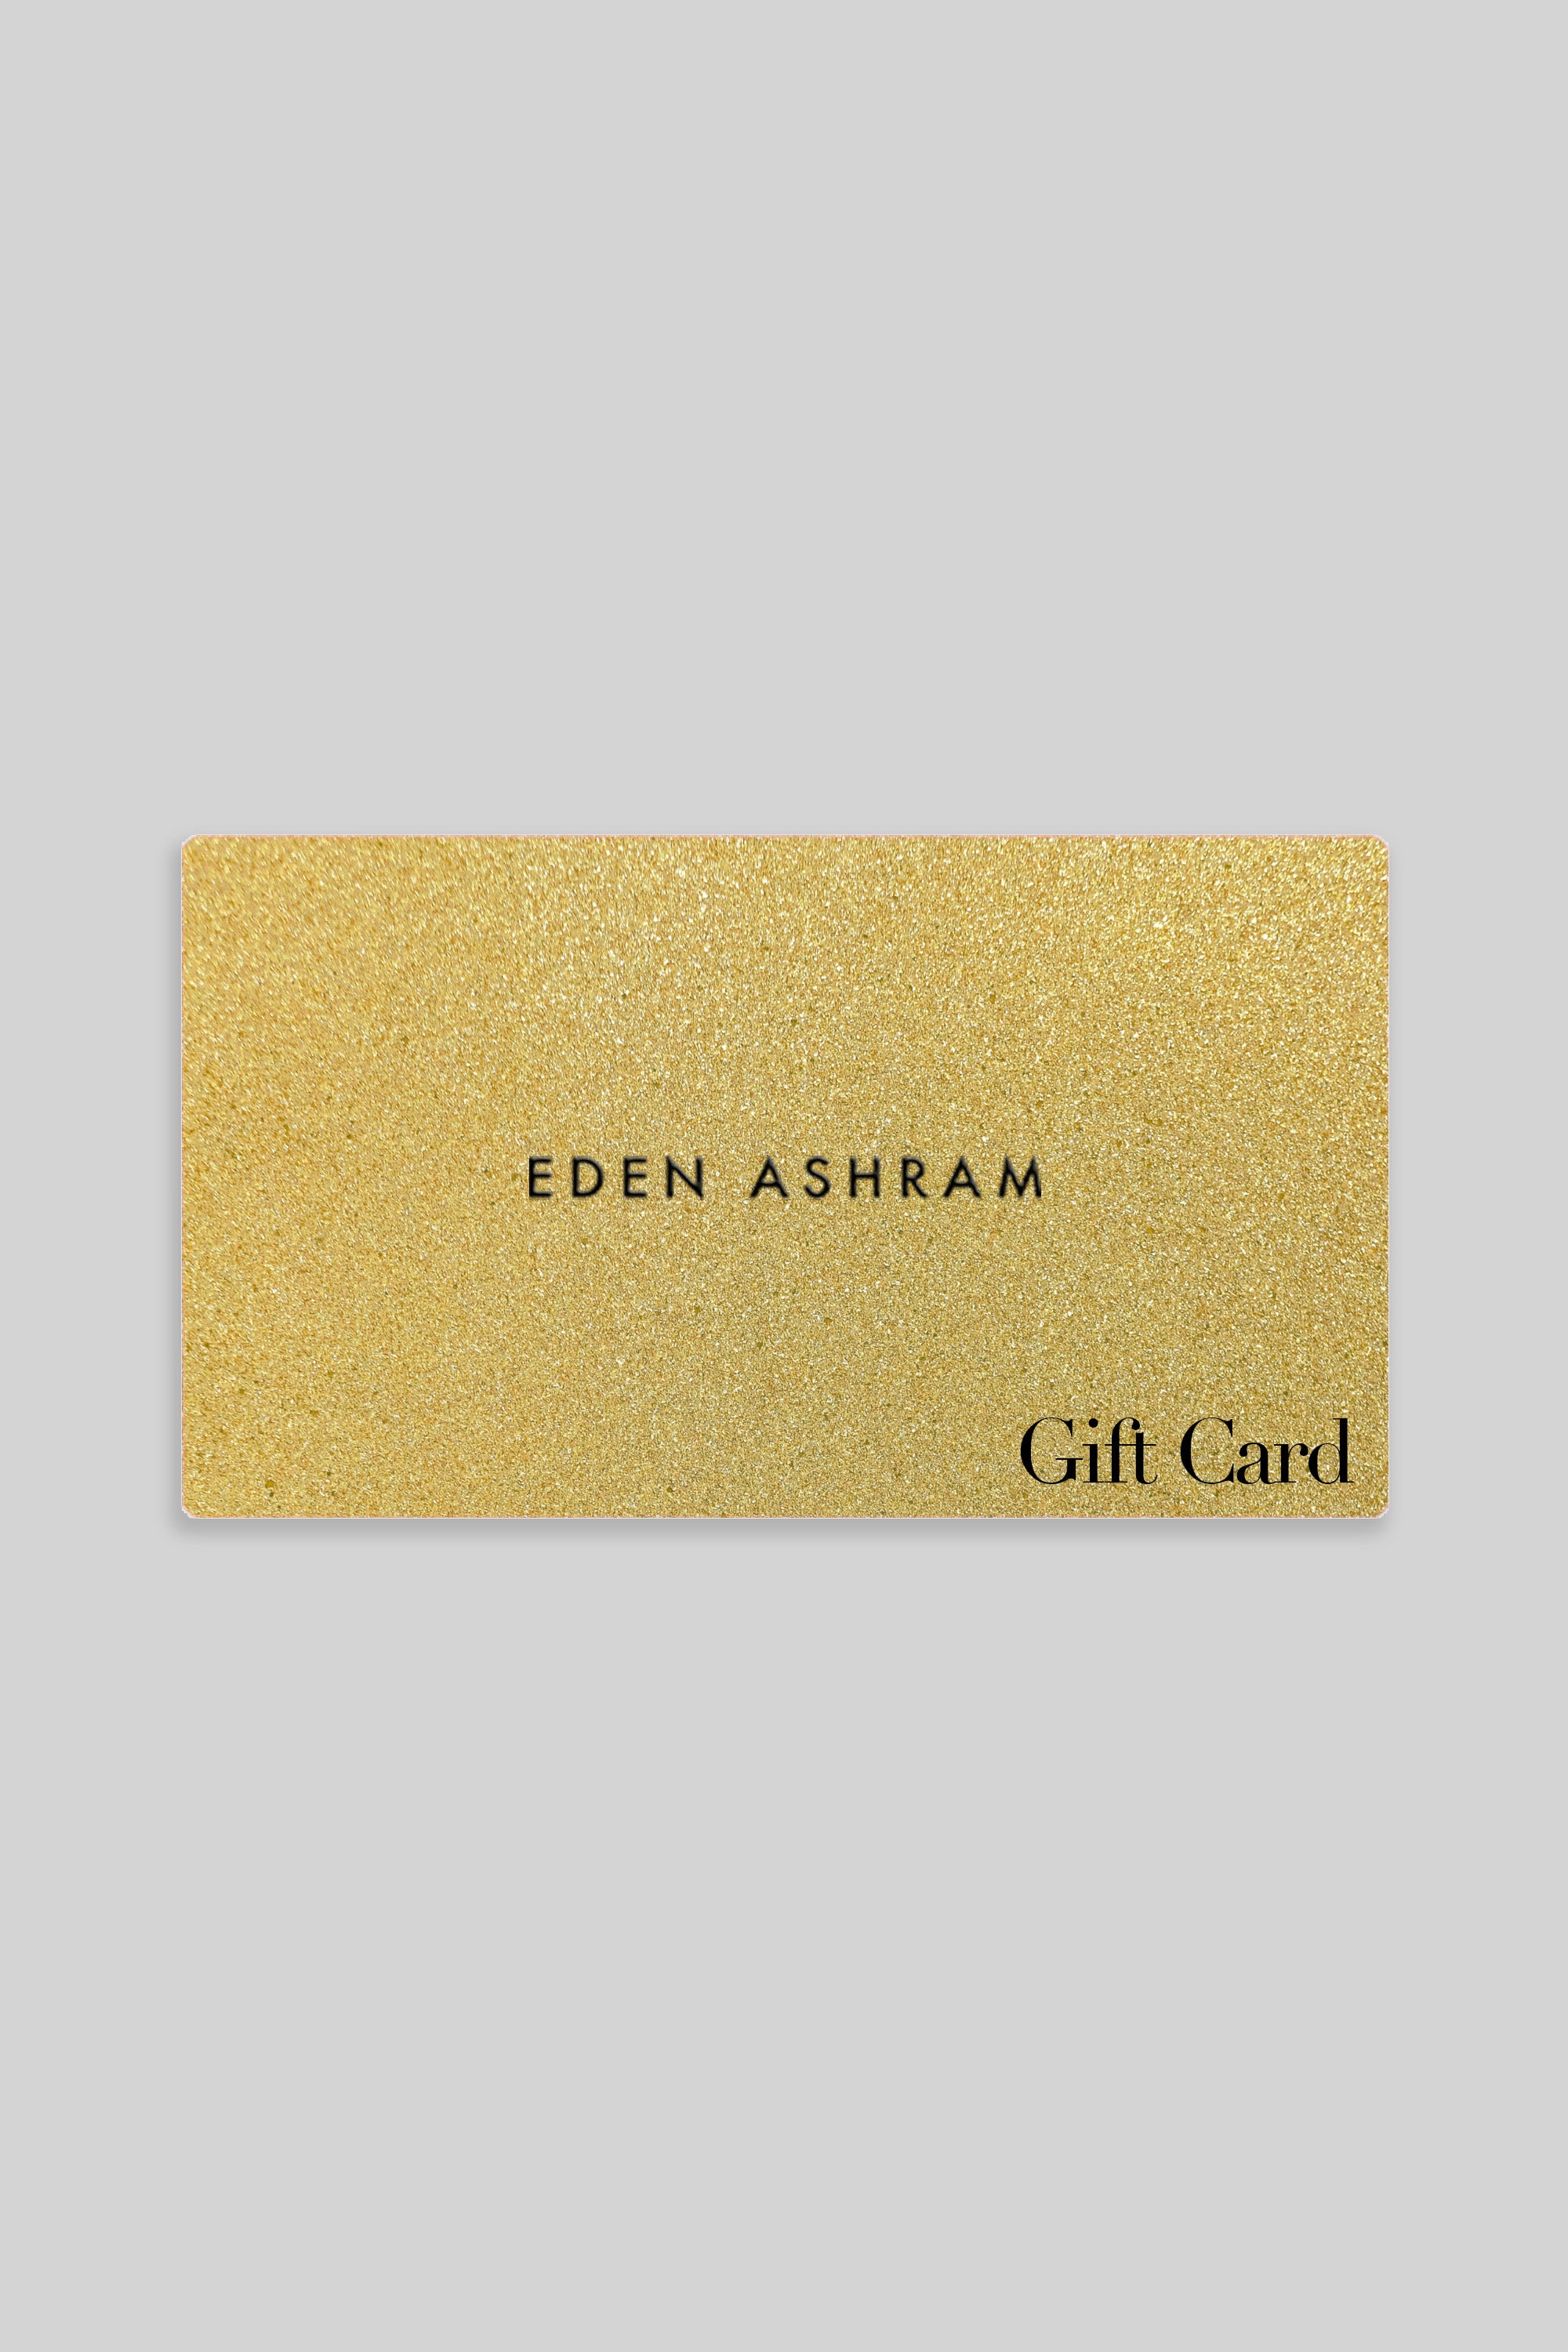 Eden Ashram Gift Card